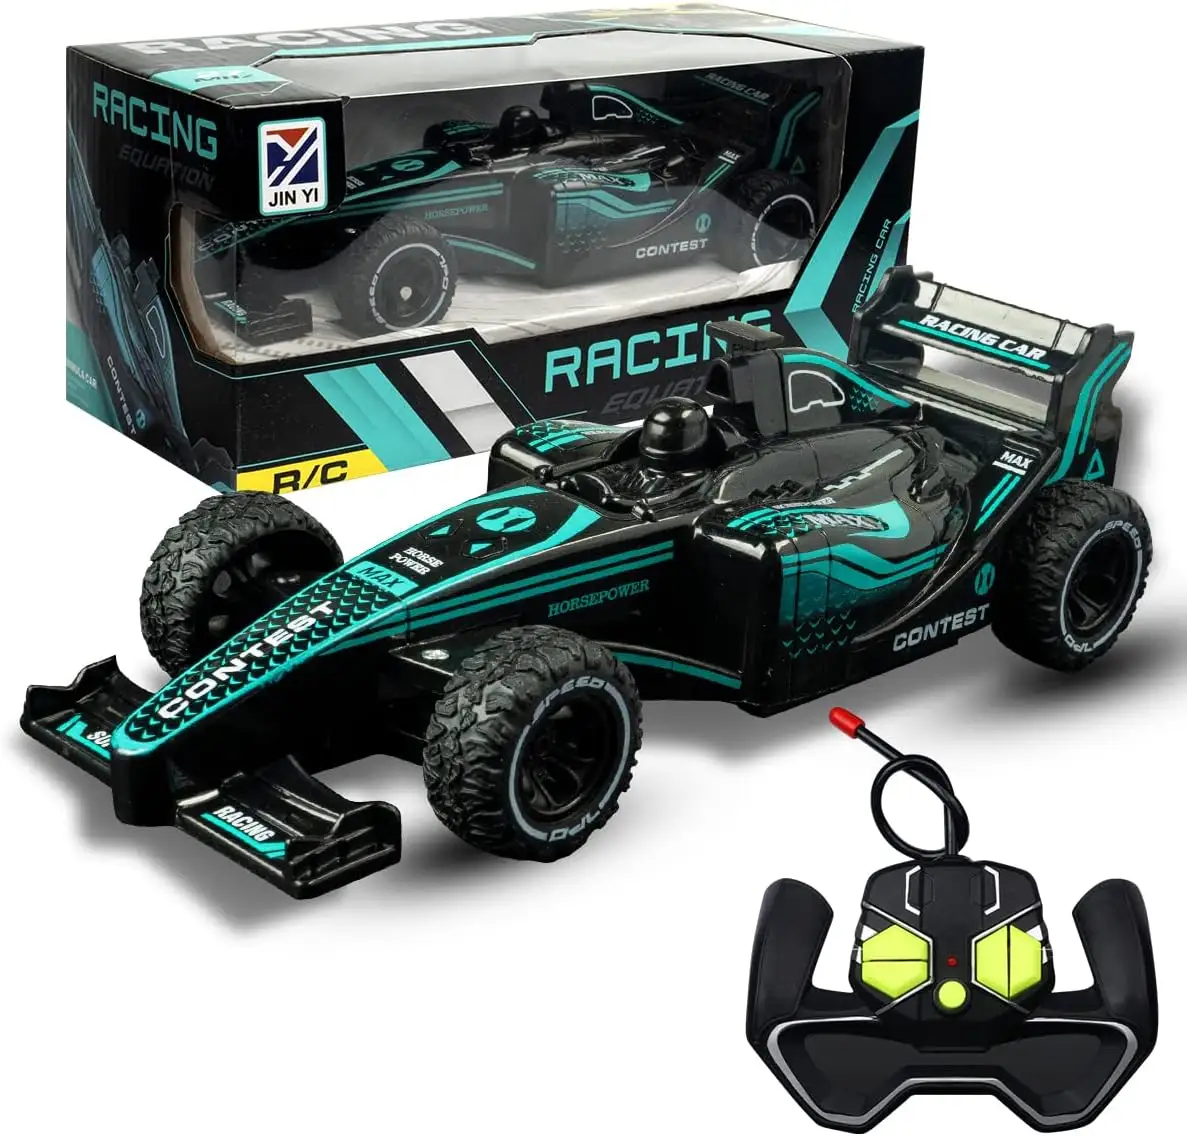 Coche con control remoto para niños, juguete de carreras, escala 1:20 MHz 27, coche RC para niños y niñas, juguete Super Power Racing